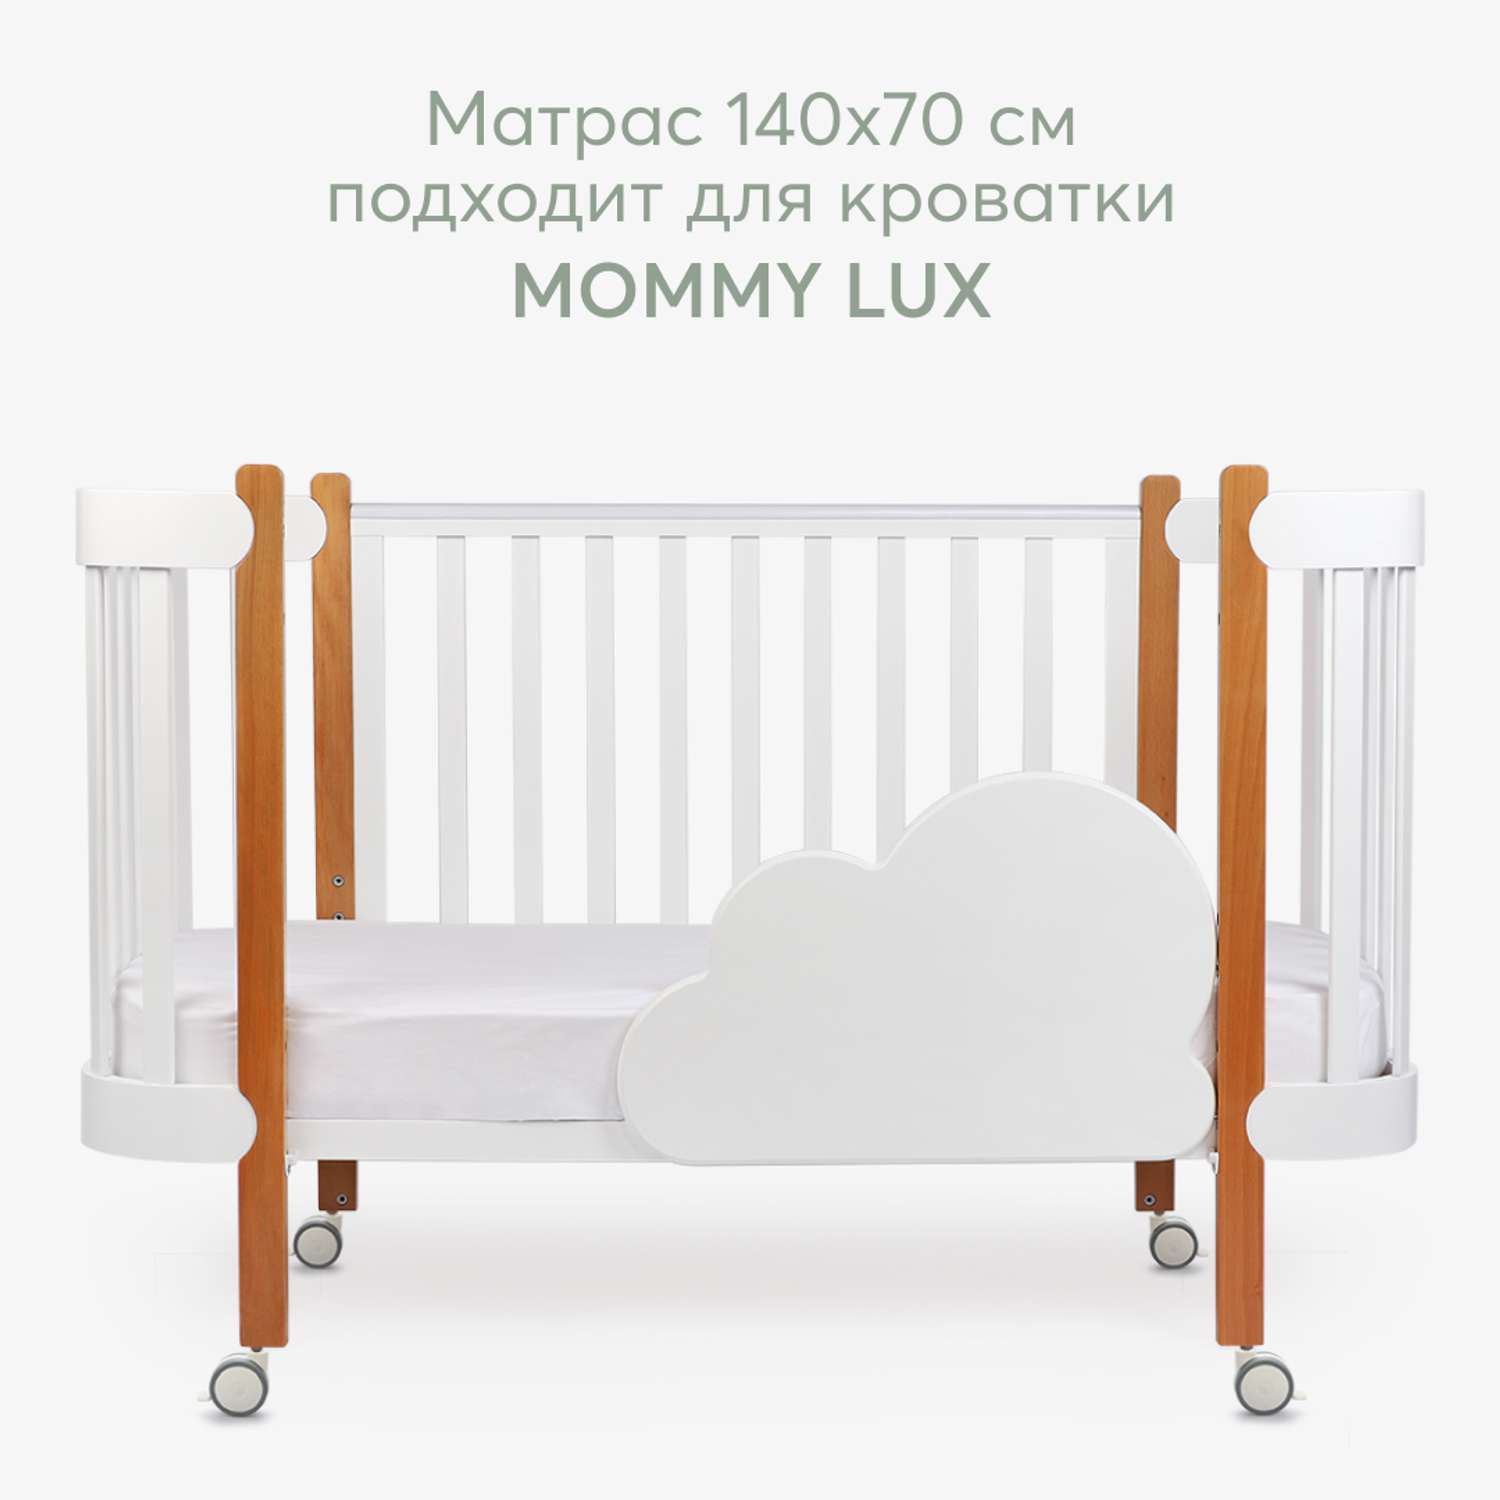 Матрас двусторонний 140х70 Happy Baby матрас для кроватки - фото 2